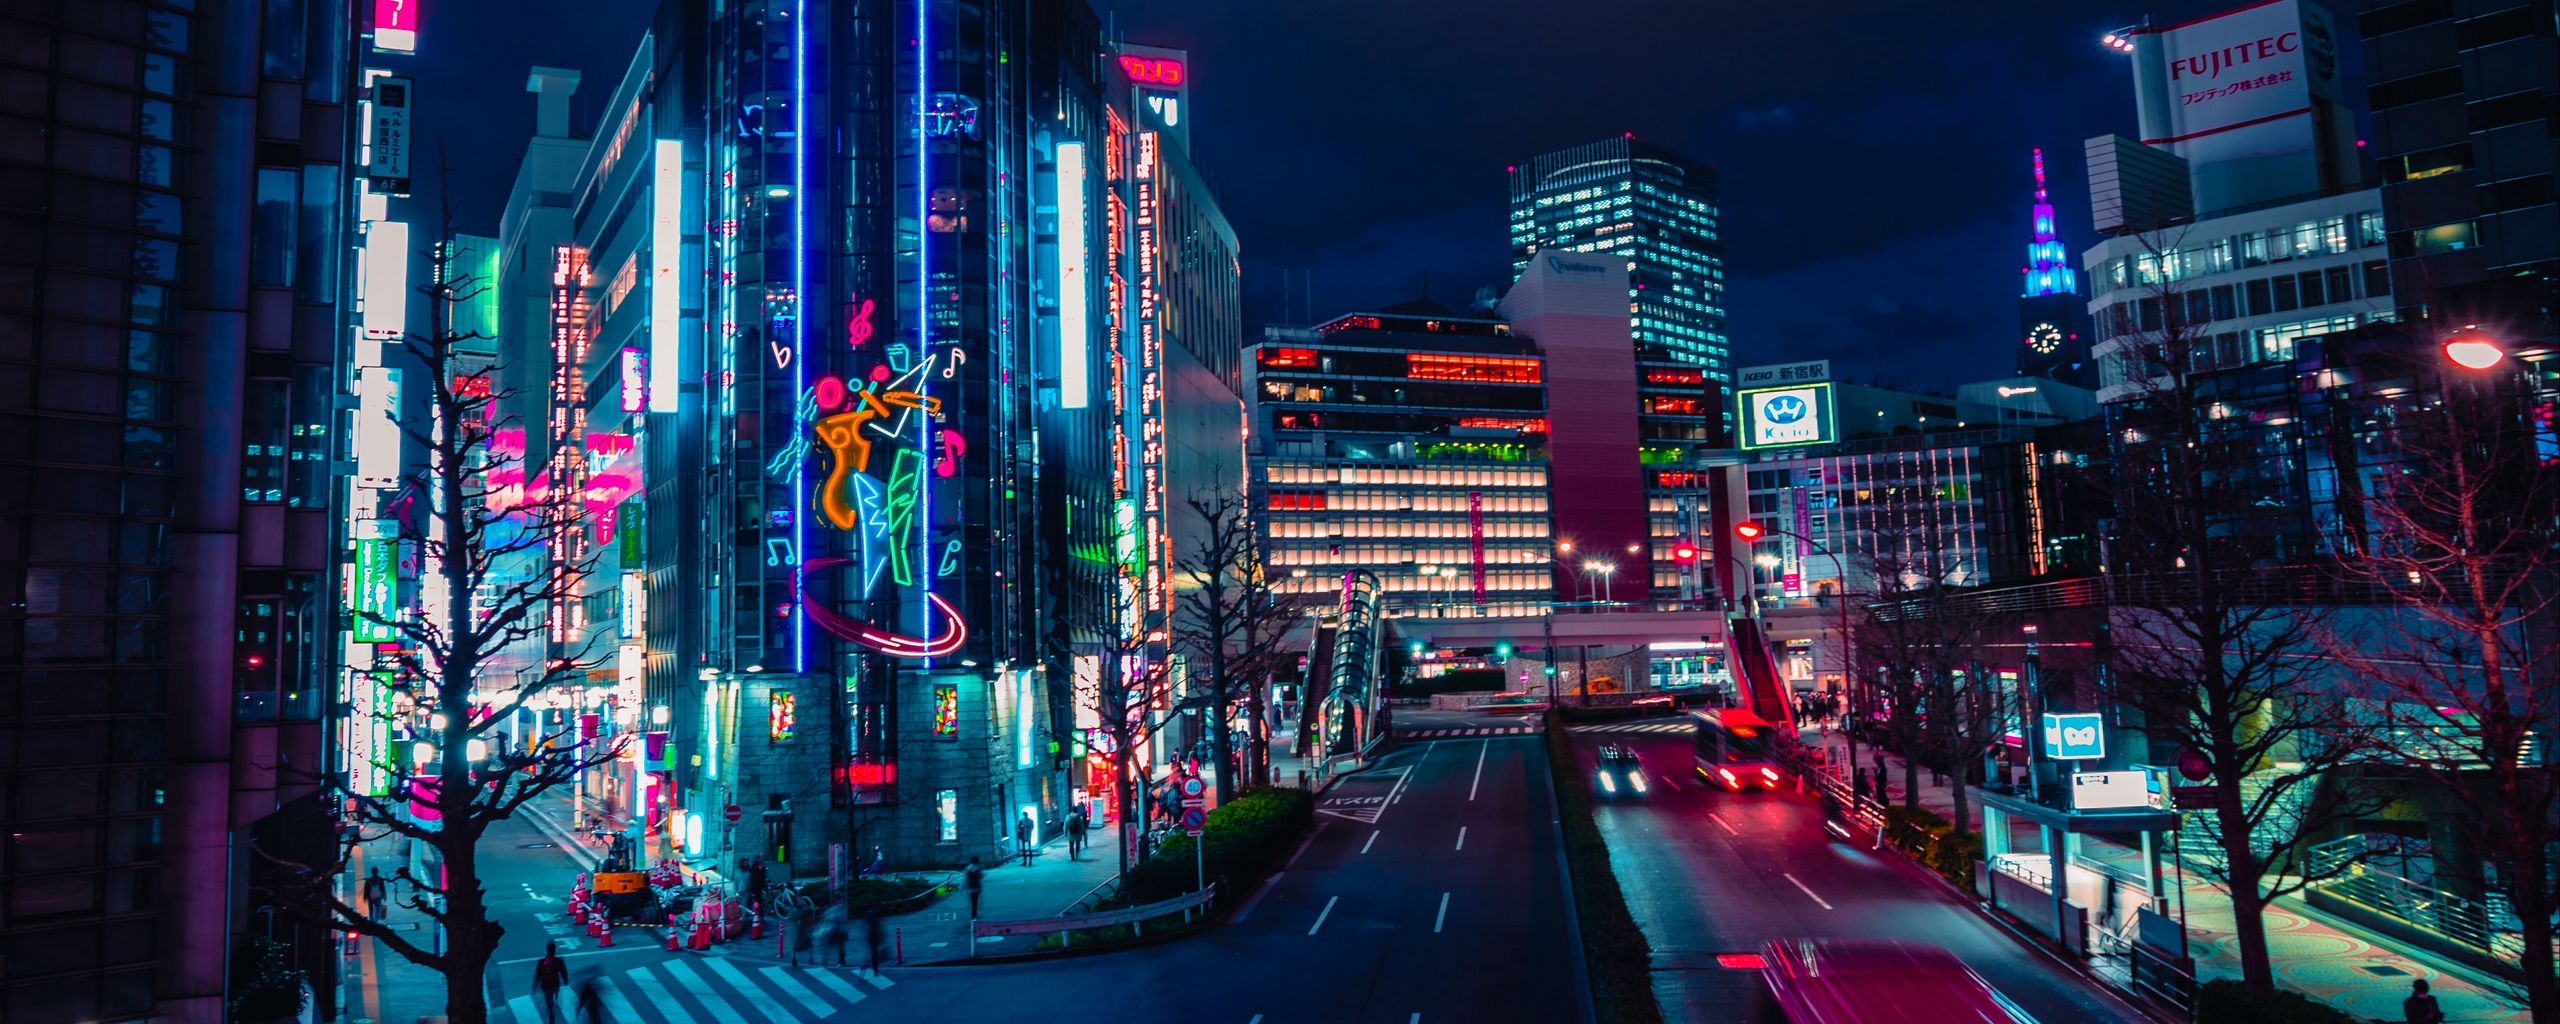 Tải ngay những hình nền đêm thành phố, đường phố, neon và đèn siêu rộng để trang trí cho màn hình máy tính của bạn. Với độ phân giải cao và hình ảnh sống động, bạn sẽ được trải nghiệm một khung cảnh đêm thật sống động và huyền ảo trên màn hình của mình.